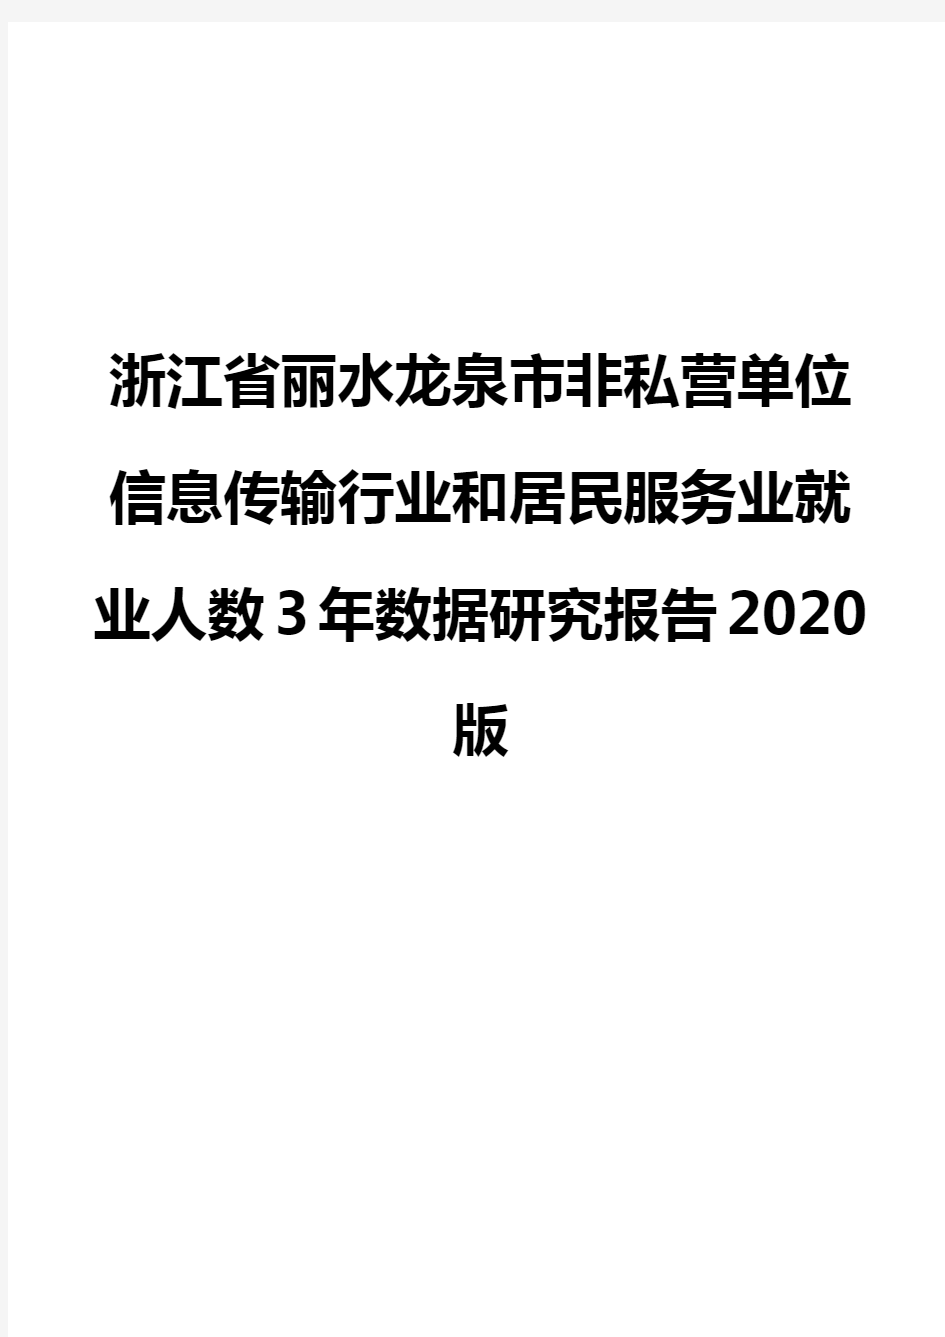 浙江省丽水龙泉市非私营单位信息传输行业和居民服务业就业人数3年数据研究报告2020版